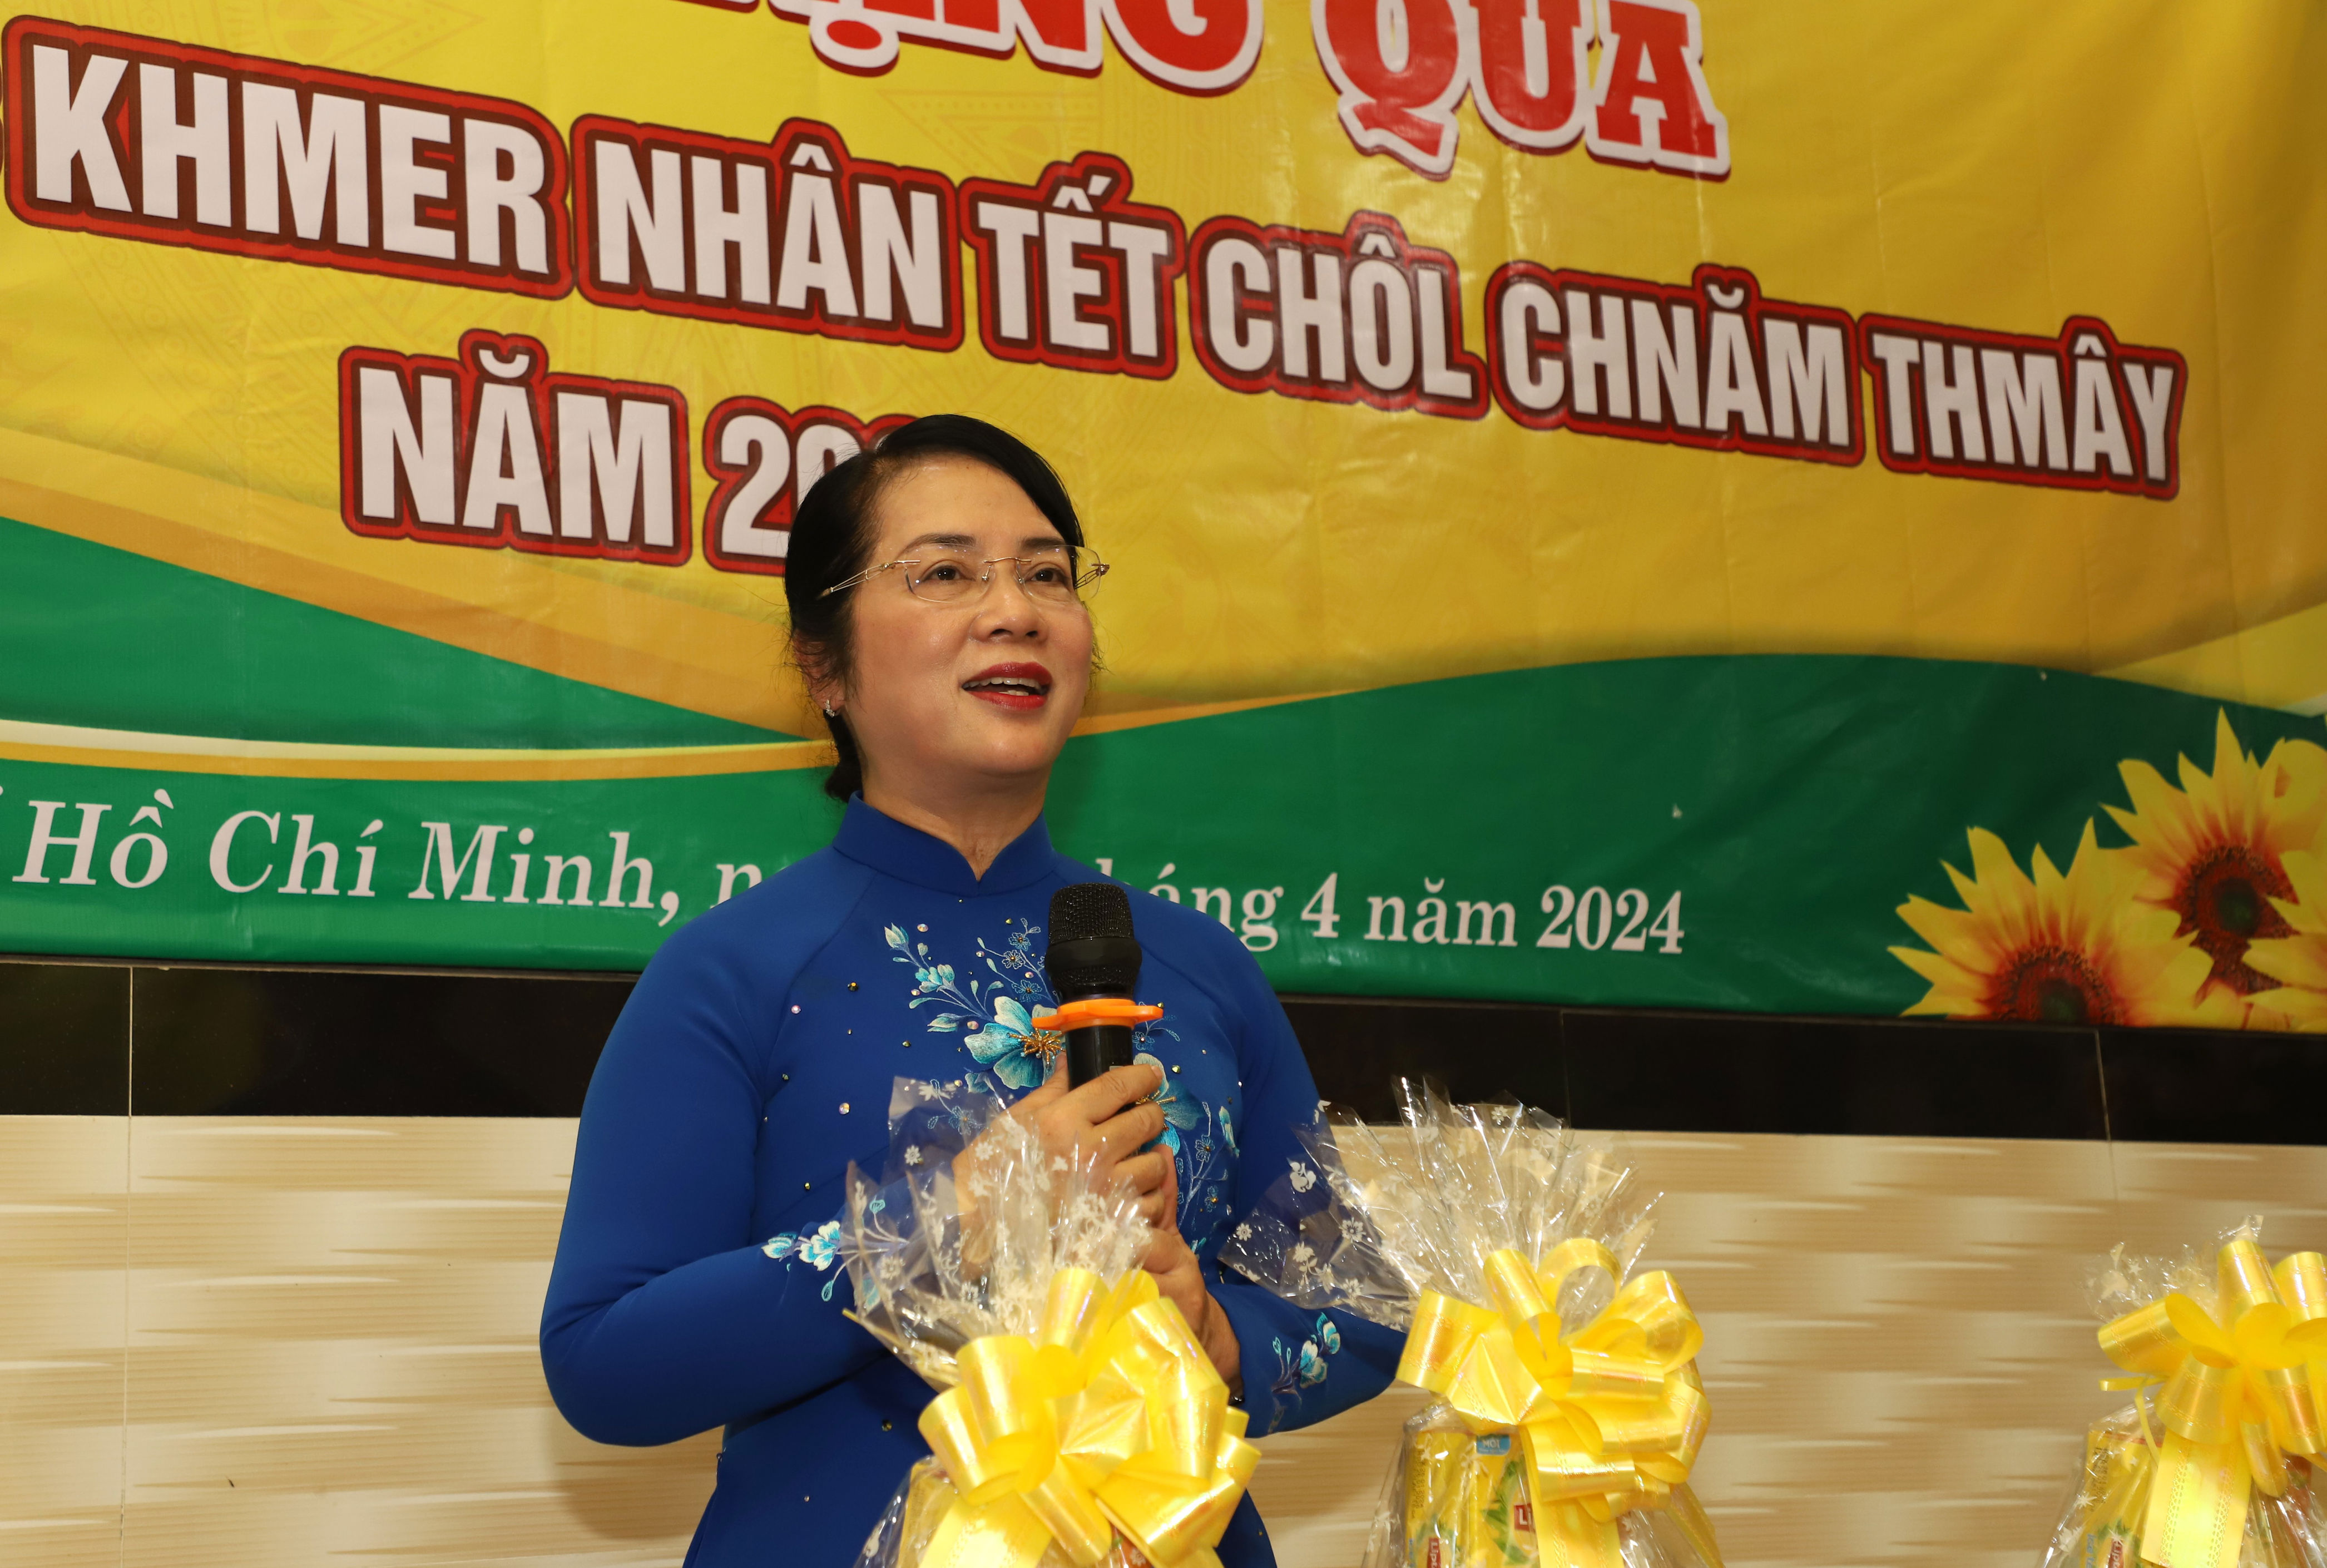 Lãnh đạo TPHCM thăm, tặng quà bà con Khmer nhân Tết cổ truyền Chôl Chnăm Thmây